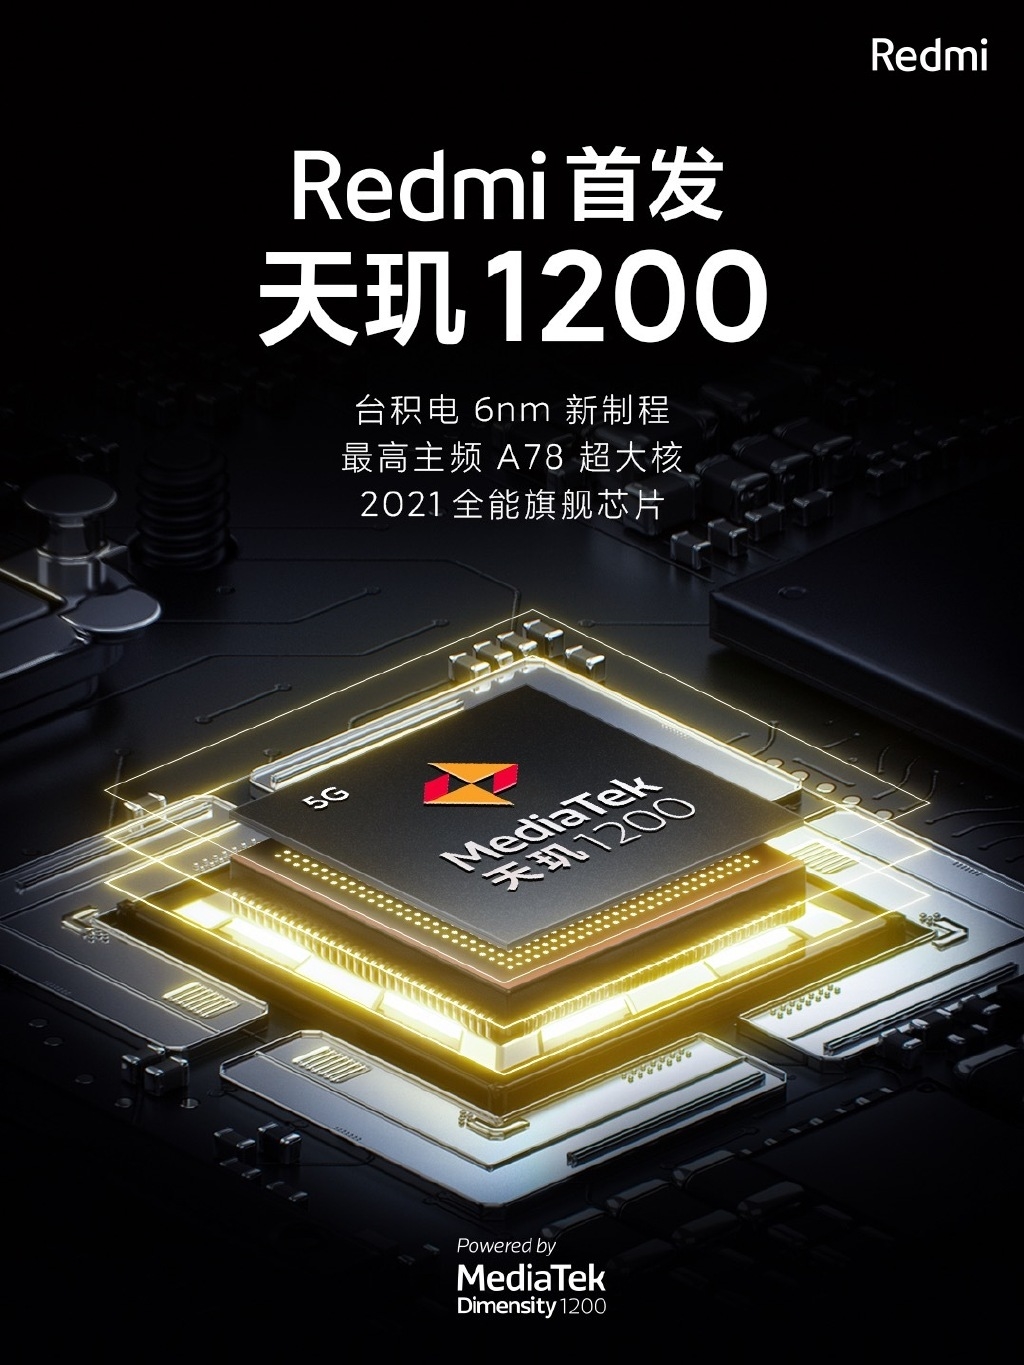 ​Redmi首款游戏手机入网 4月发布​​​